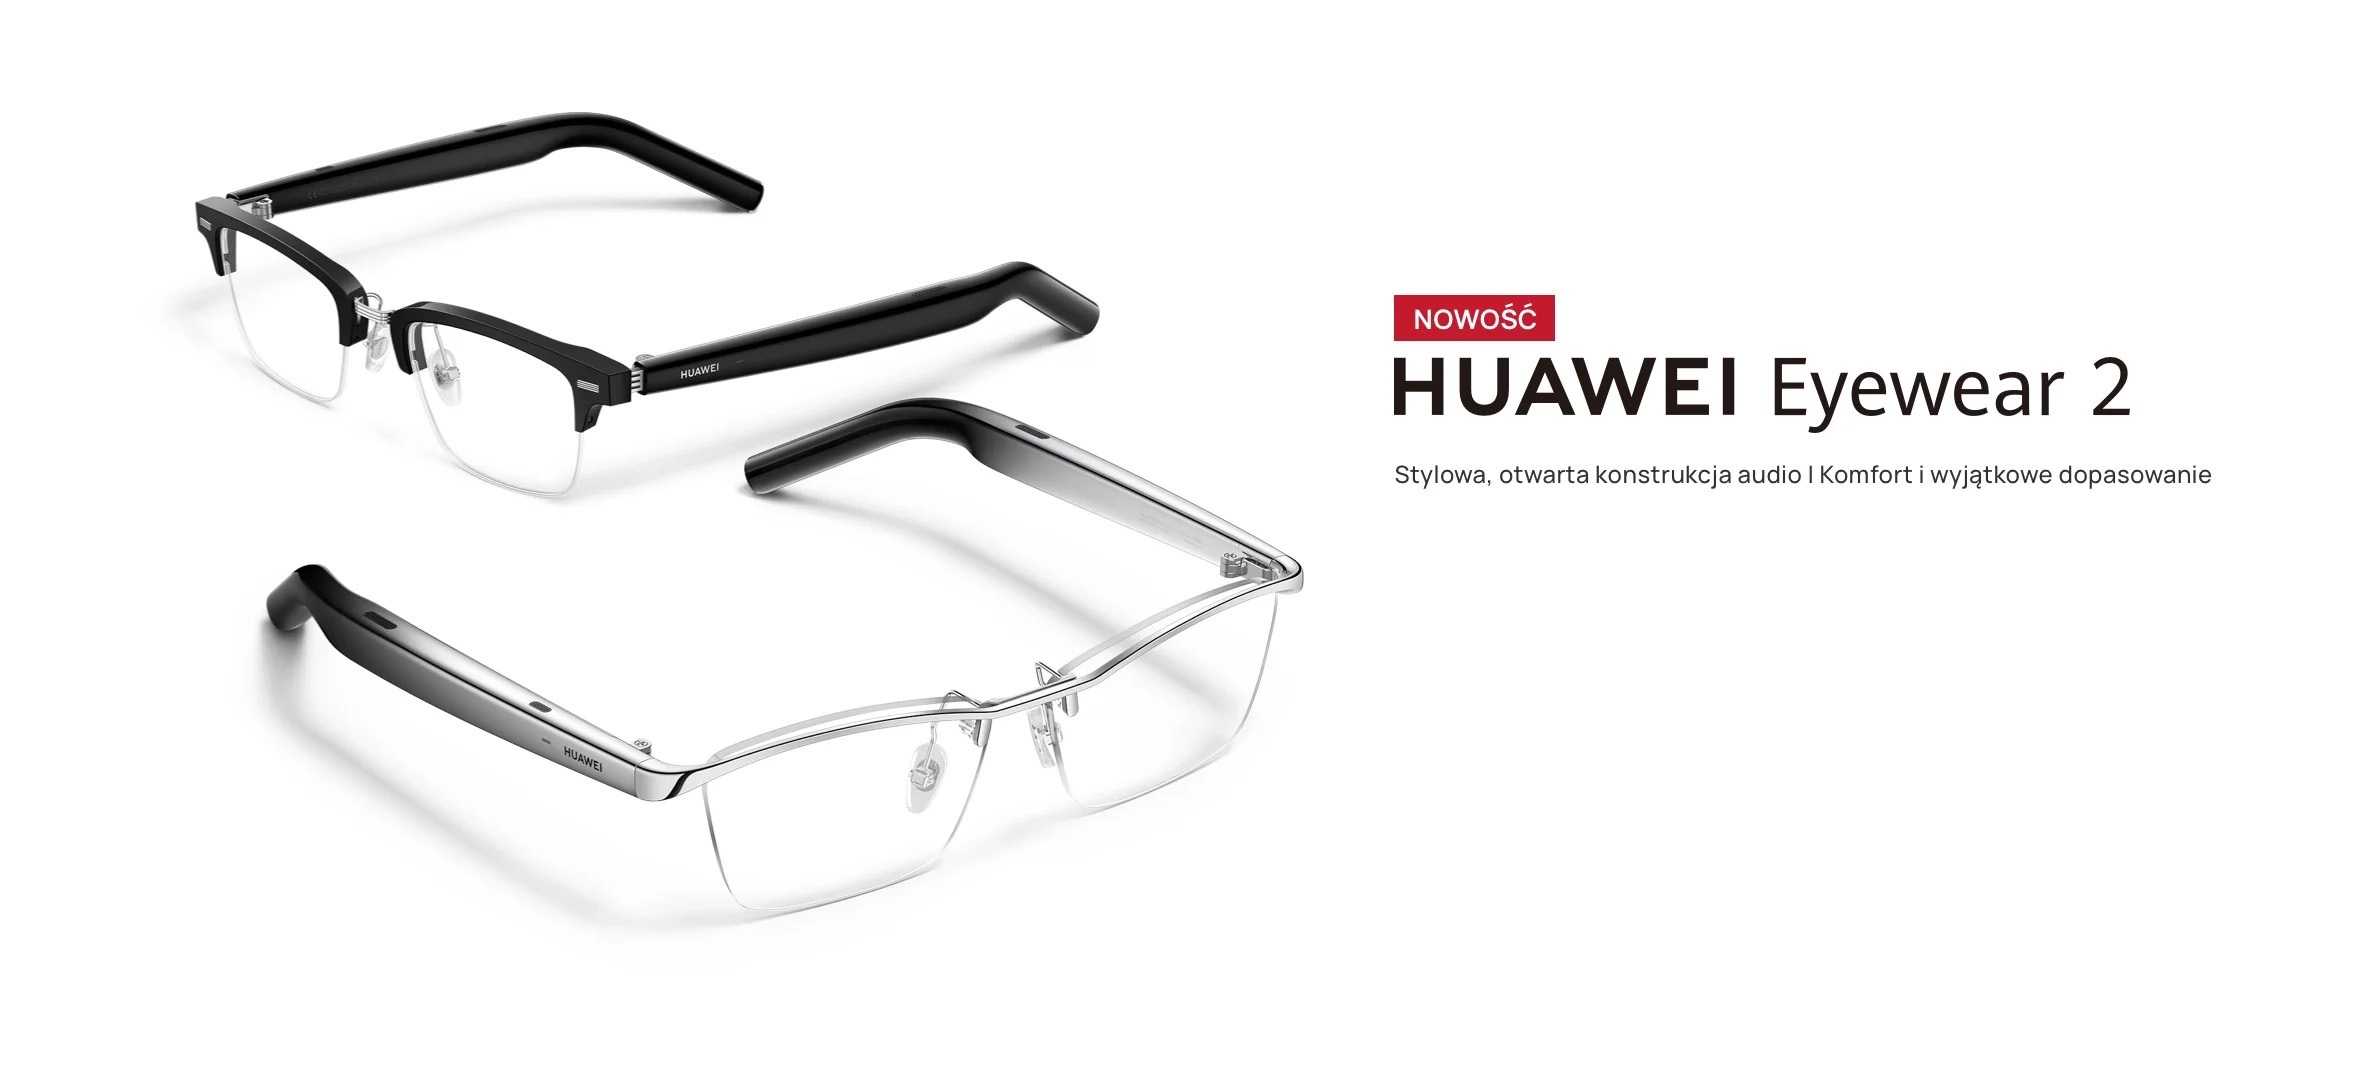 Inteligentne okulary Eyewear 2 (źródło: HUAWEI)